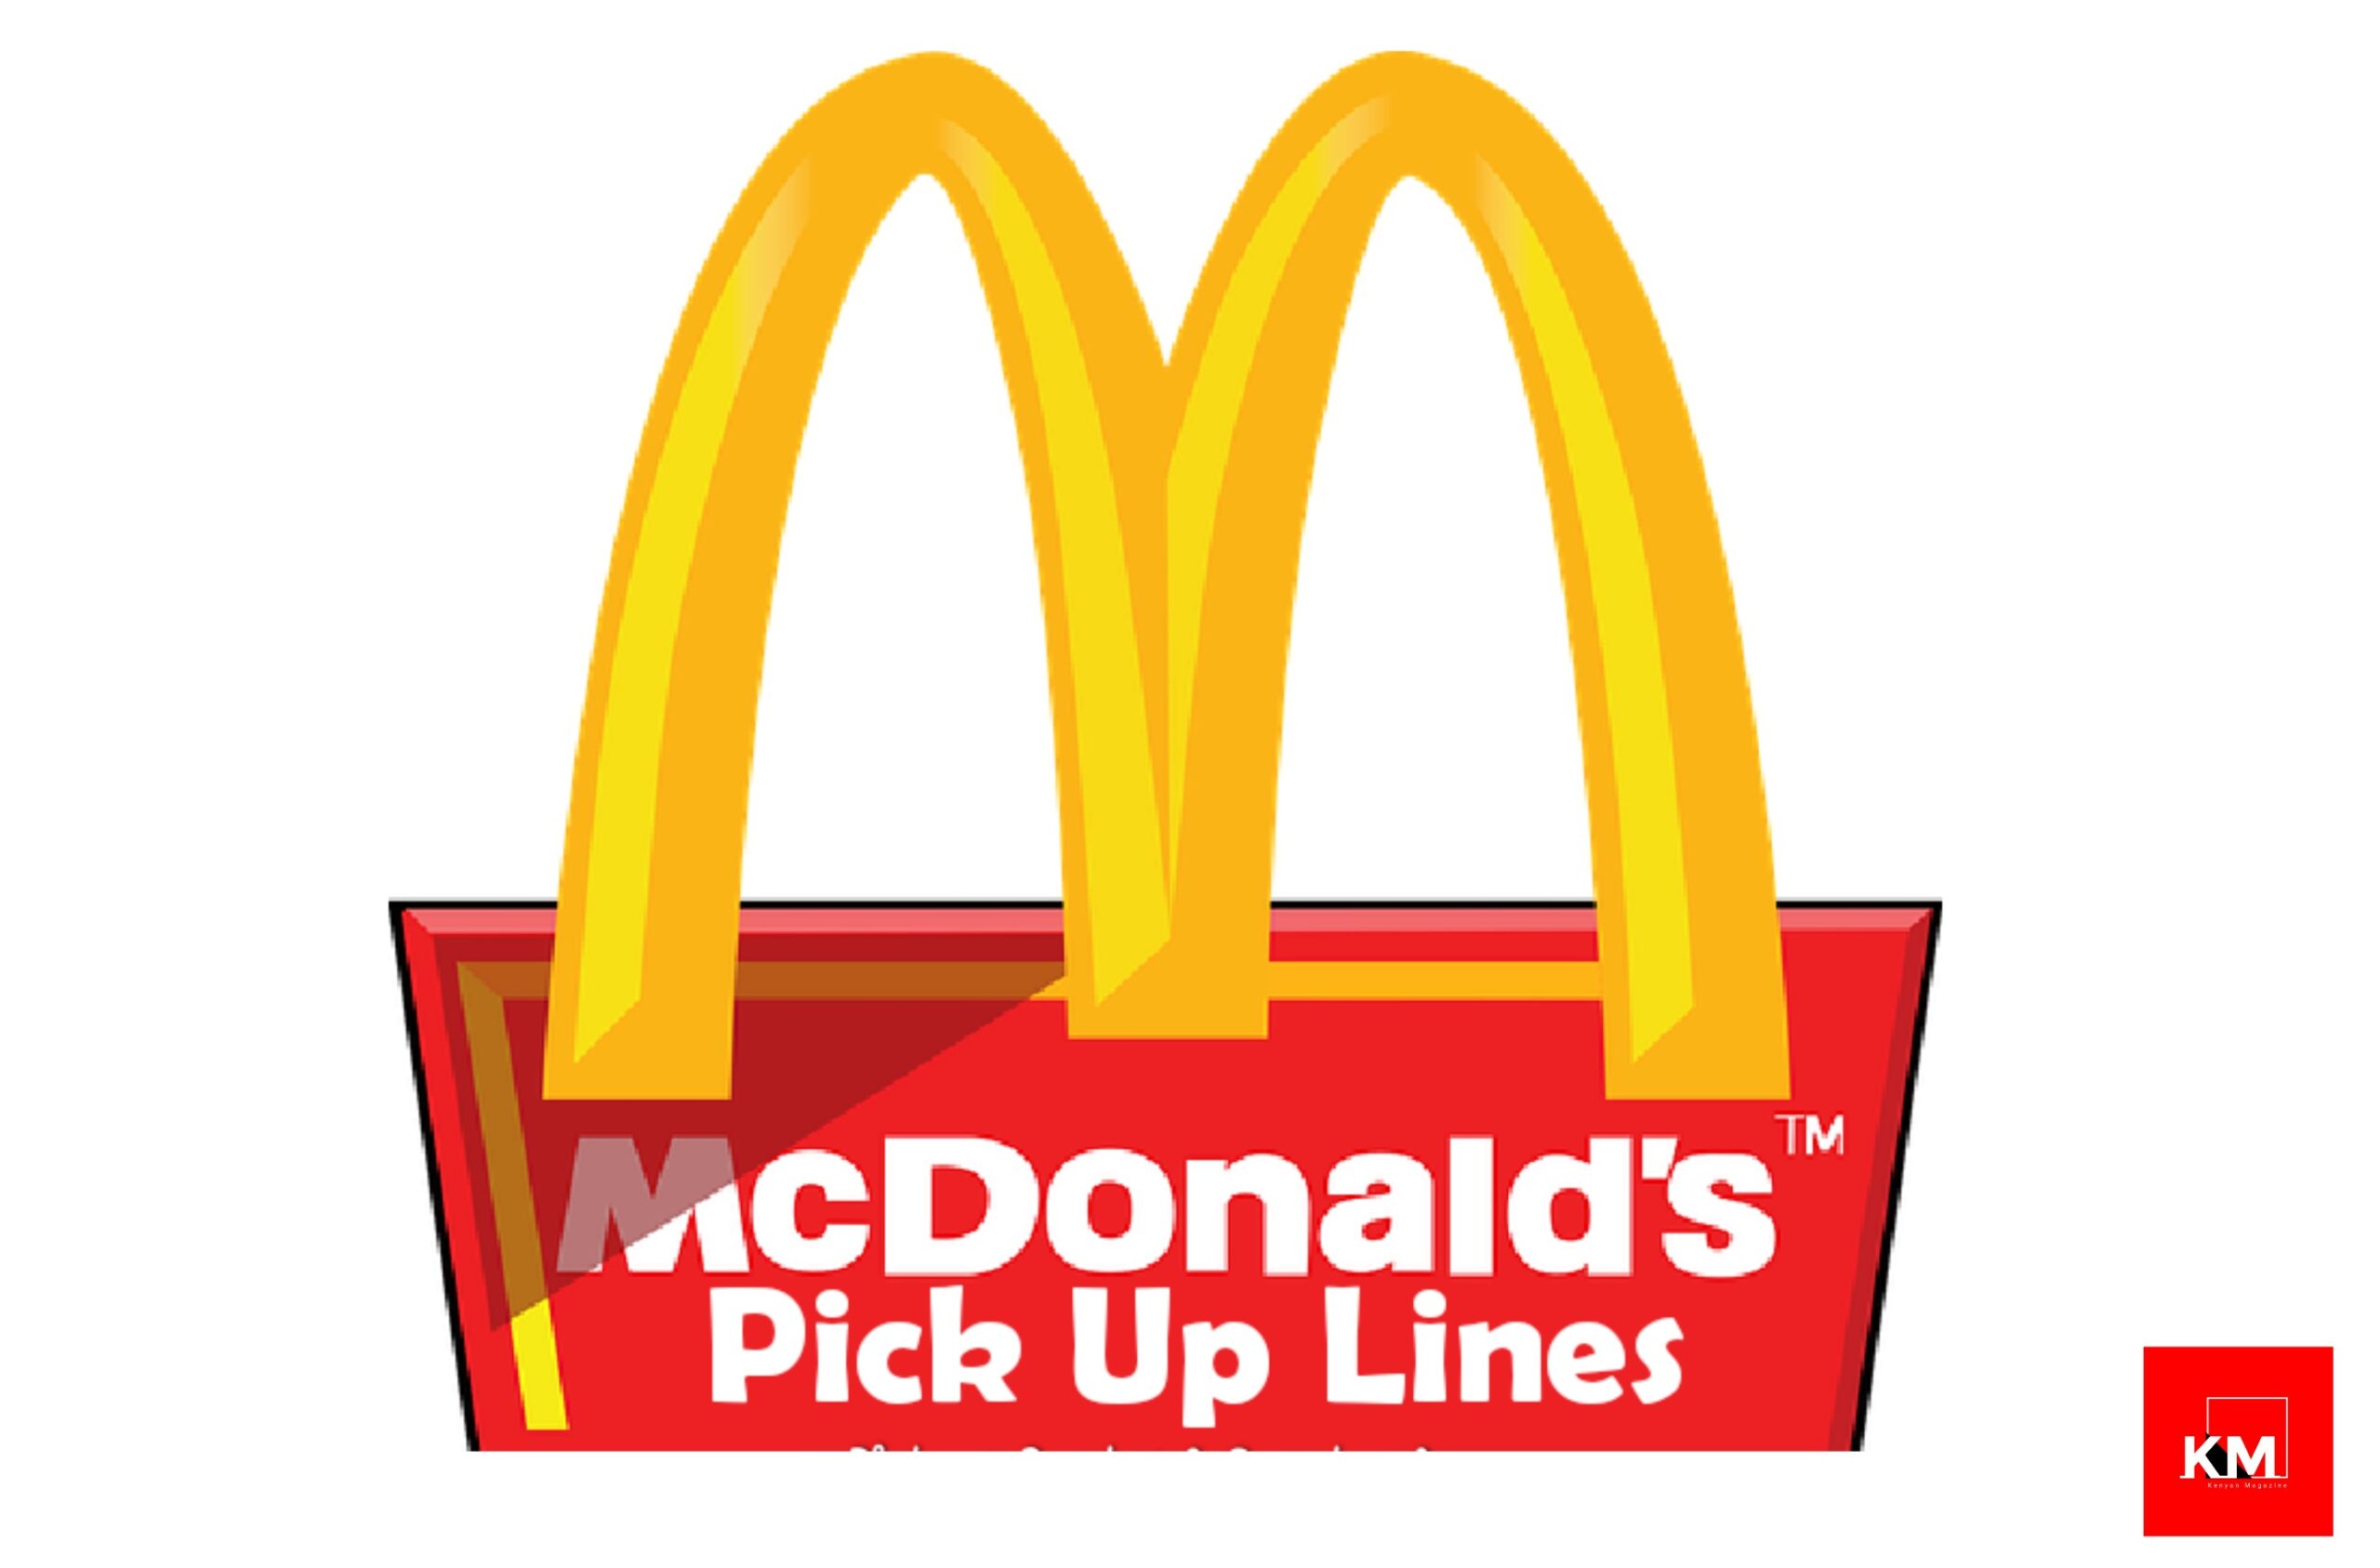 McDonald's pick up lines